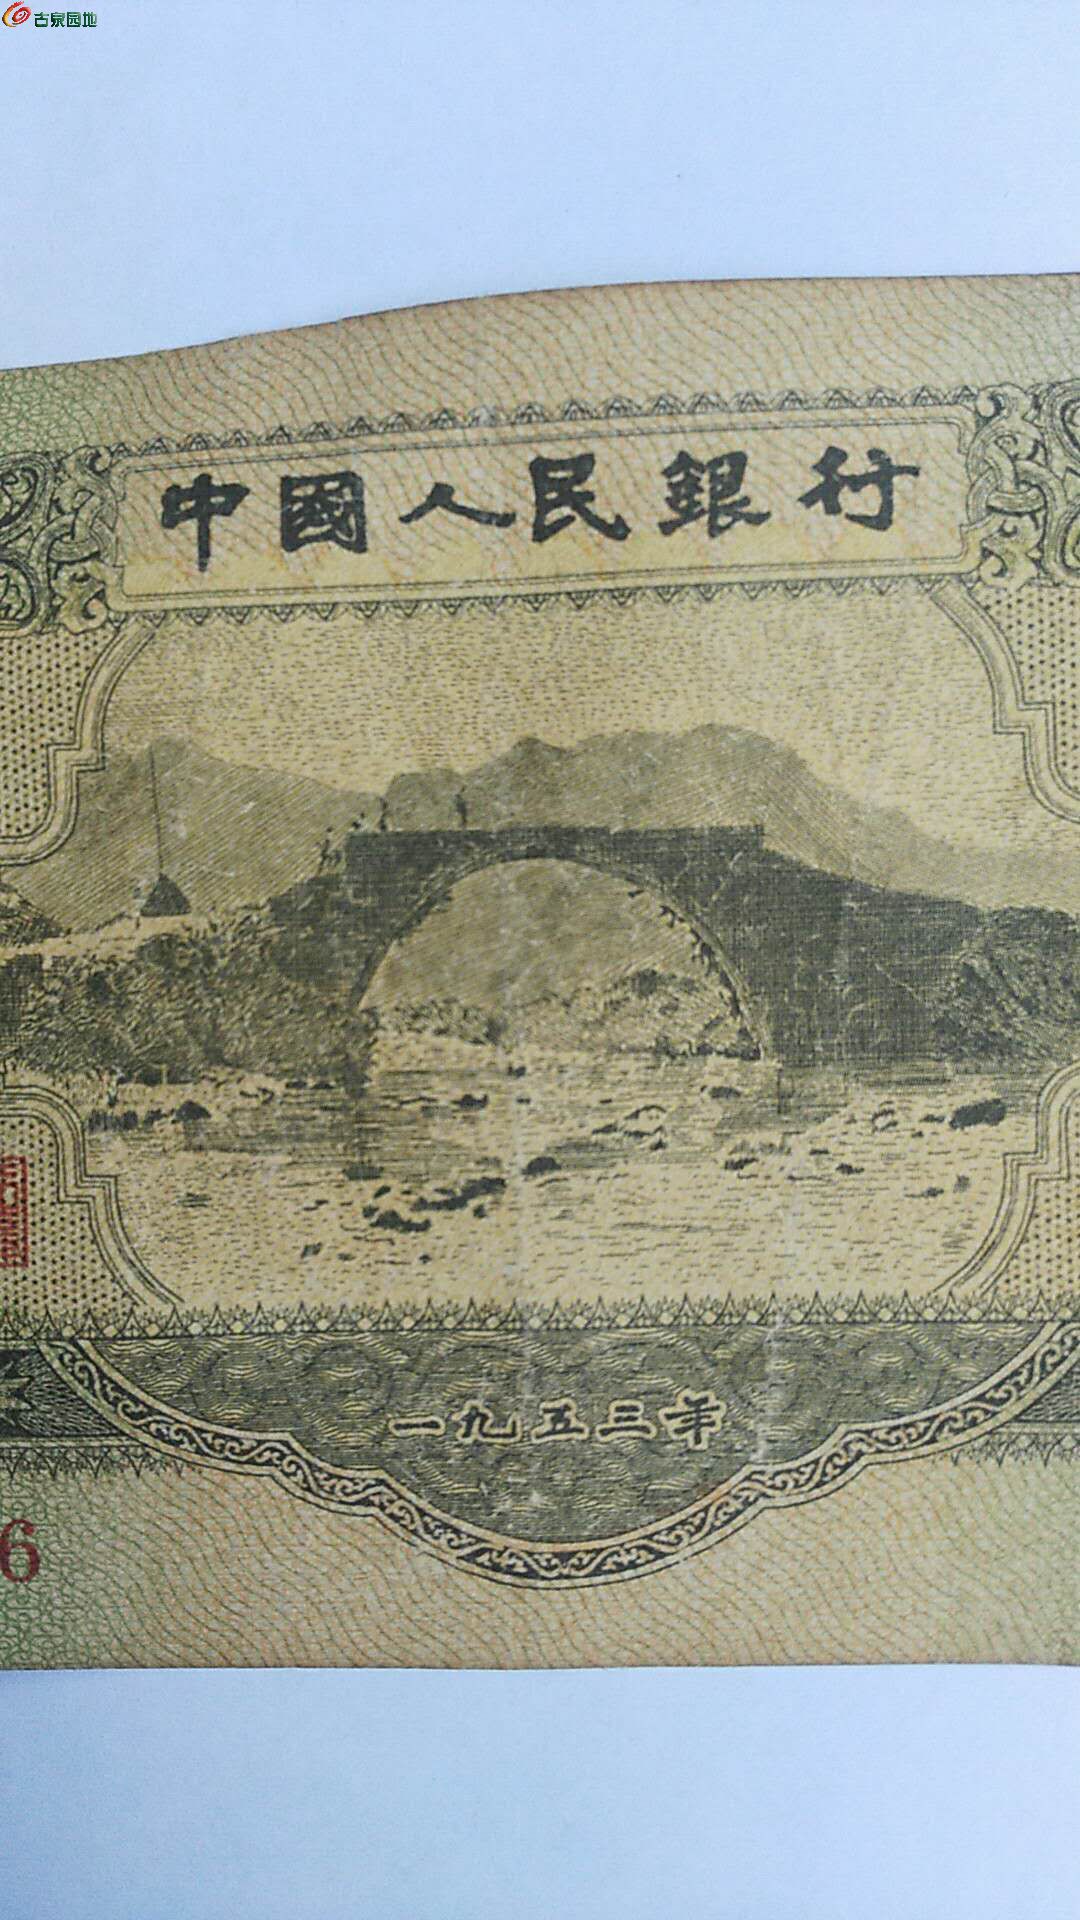 苏三元真币暗记图片图片